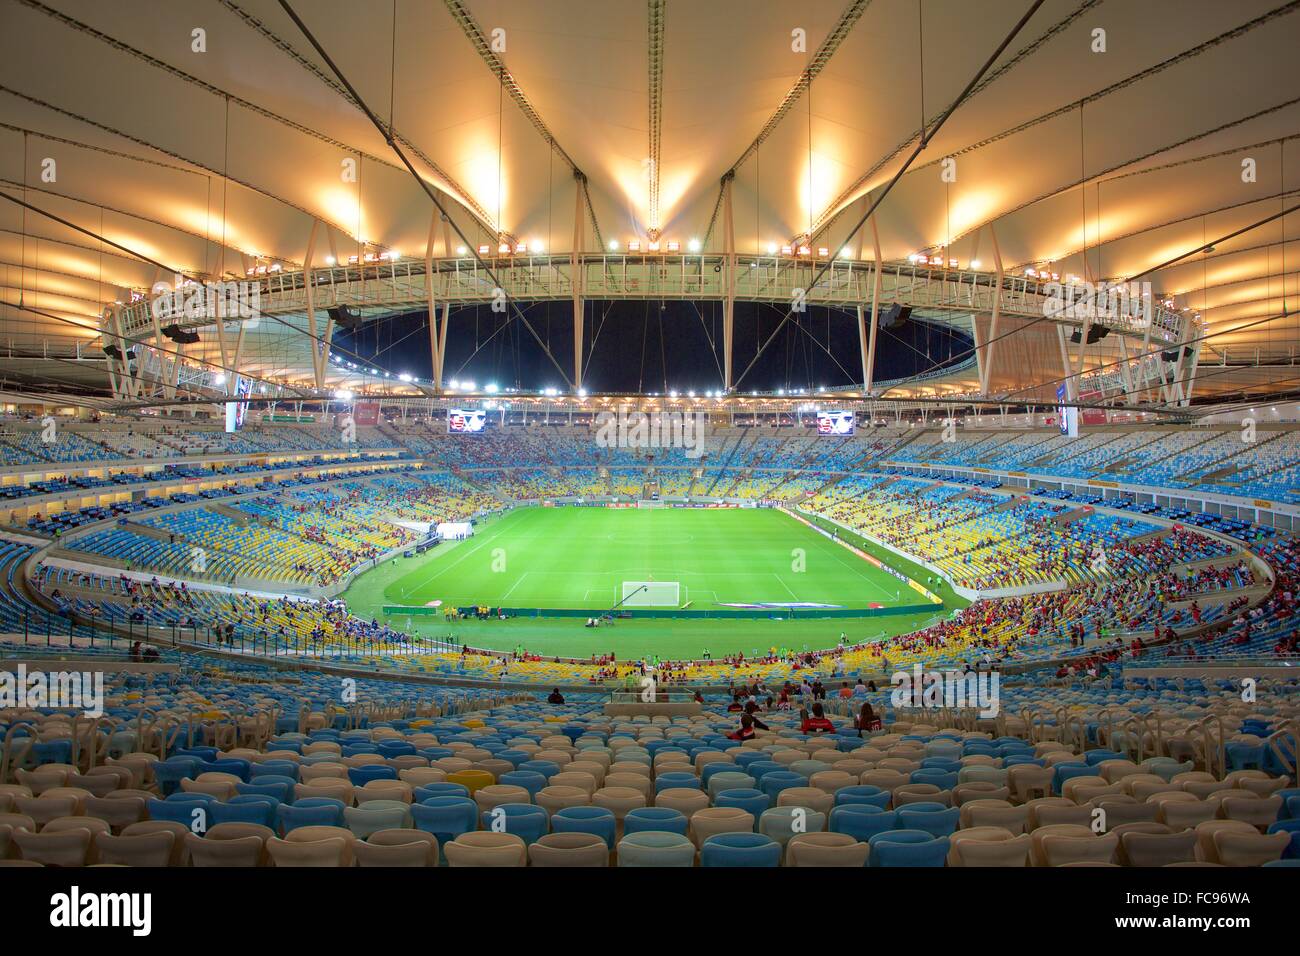 Знаменитый стадион в рио. Стадион Маракана в Бразилии. Стадион «Маракана» в Рио-де-Жанейро, Бразилия.. Олимпийский стадион «Маракана». Rio-de-Janeyro Marakana stadioni.